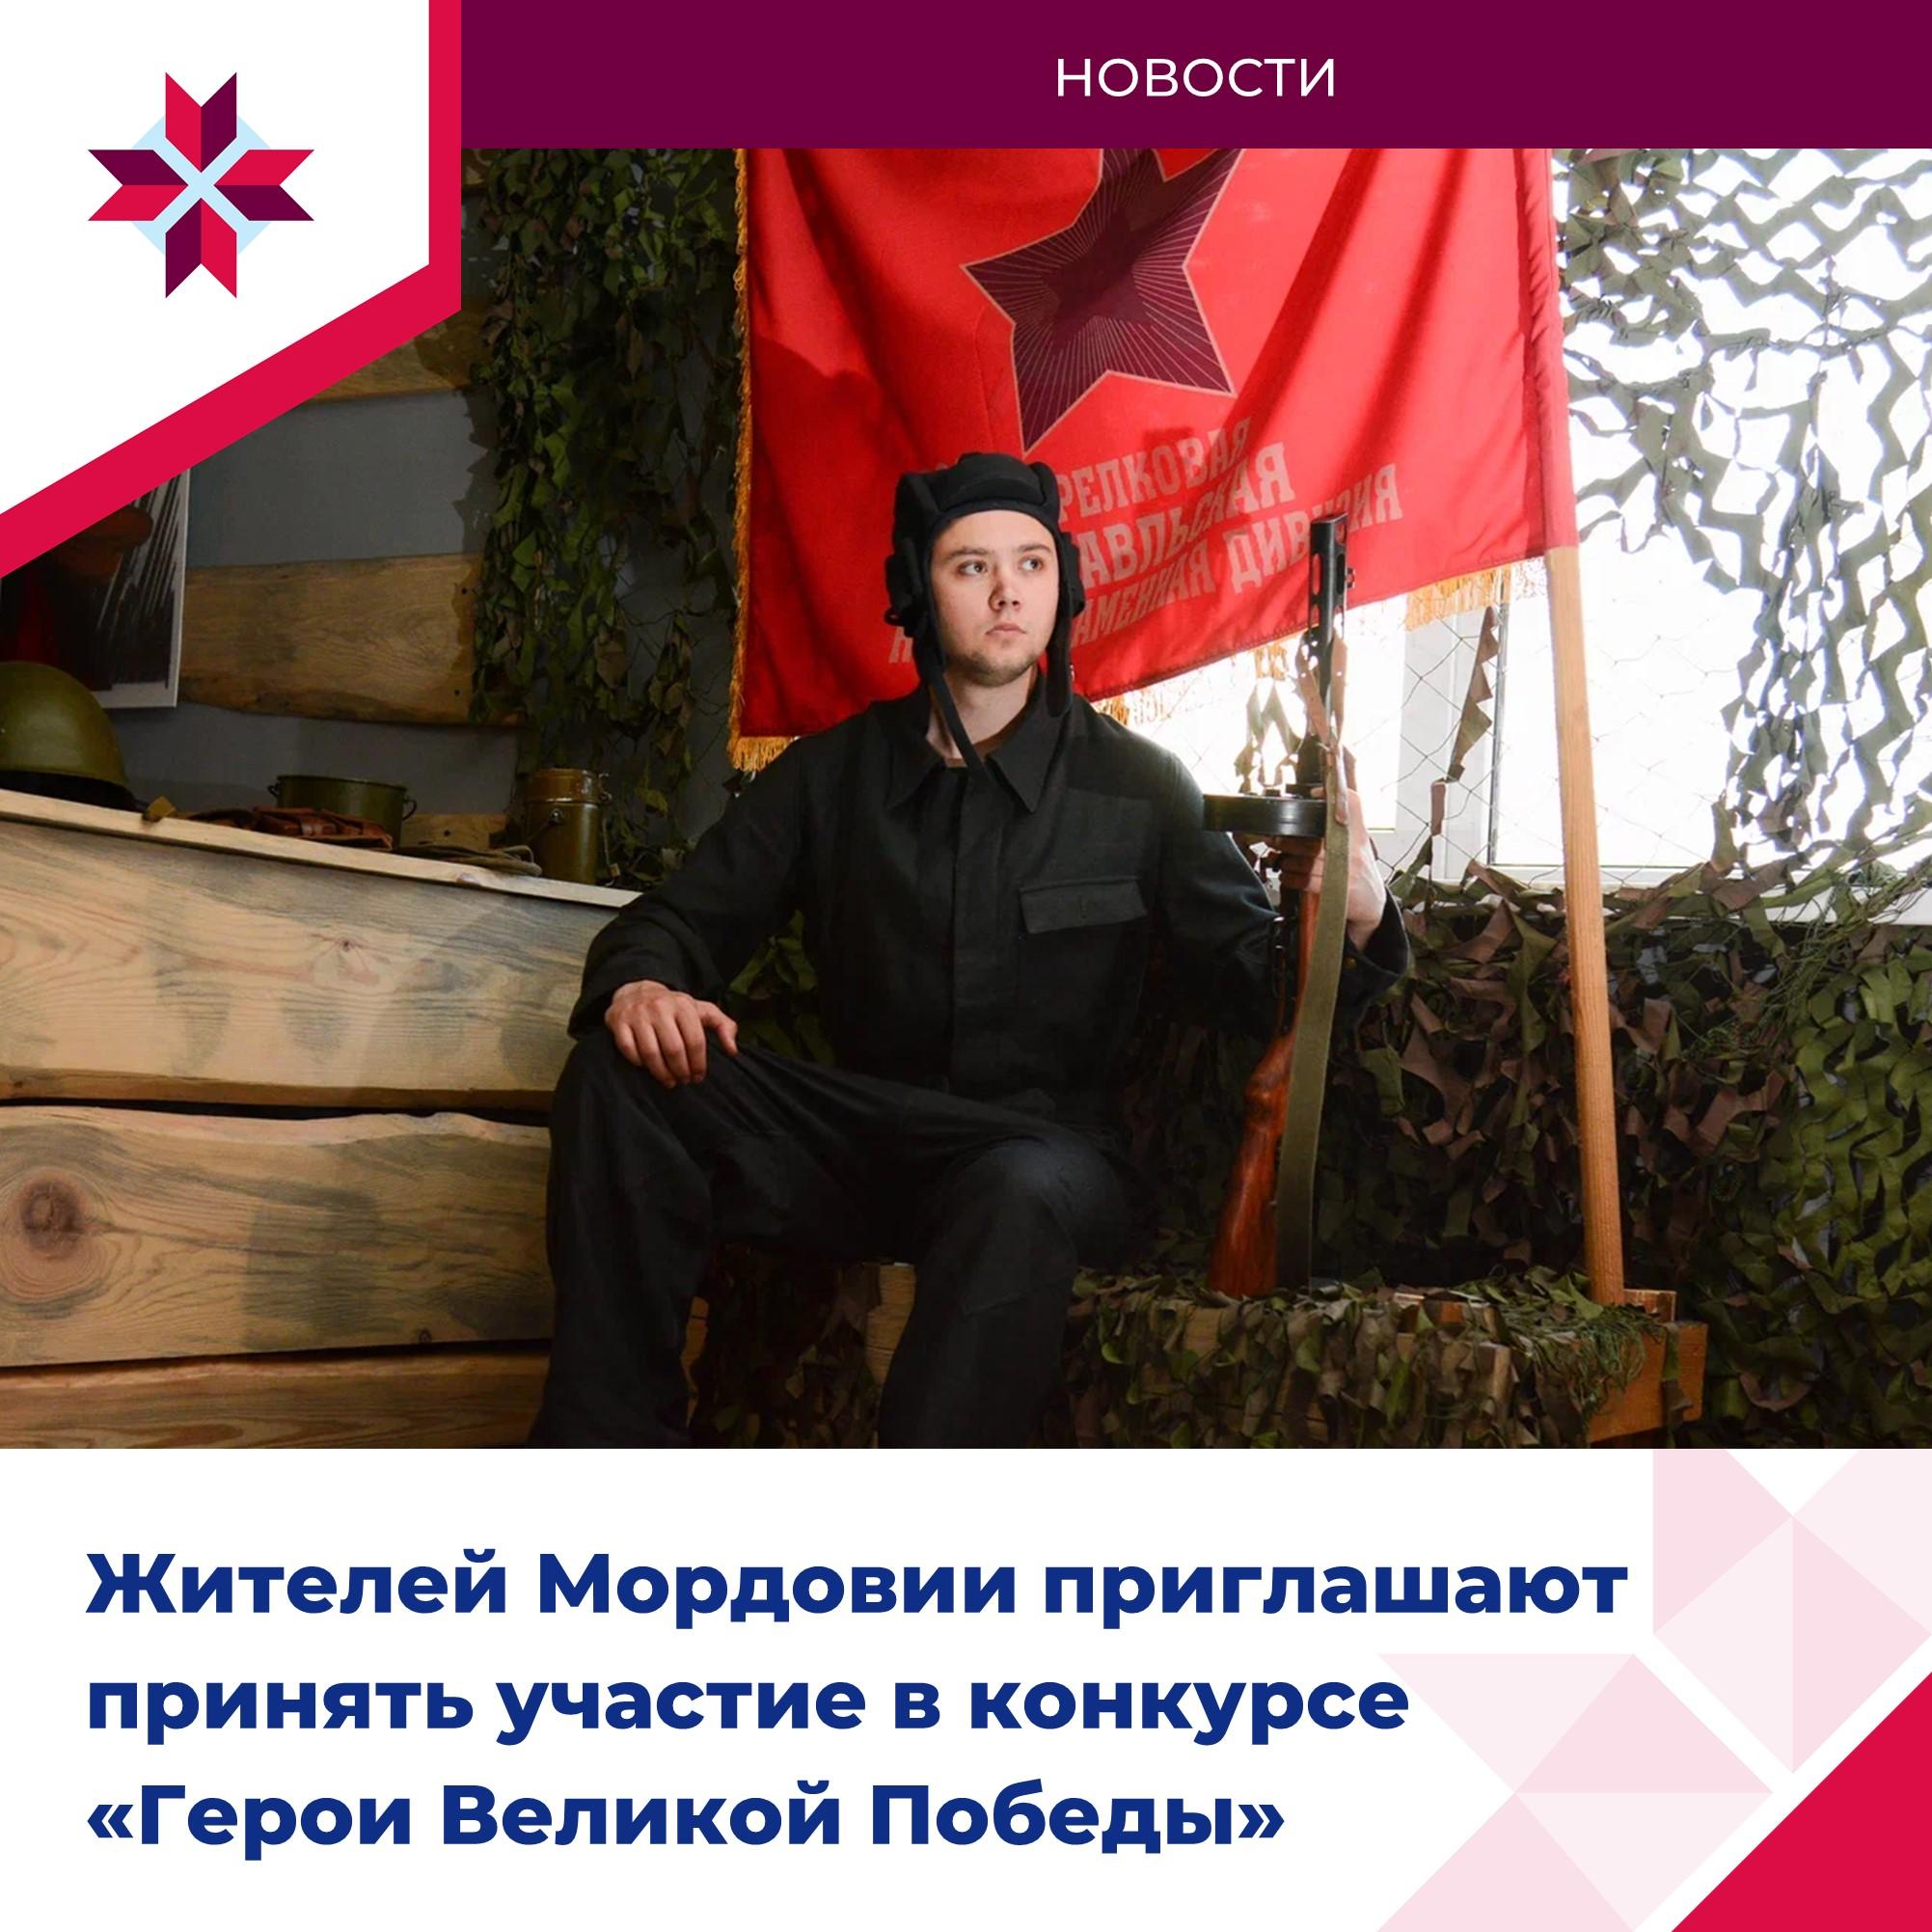 Жители Мордовии участвуют в конкурсе «Герои Великой Победы».